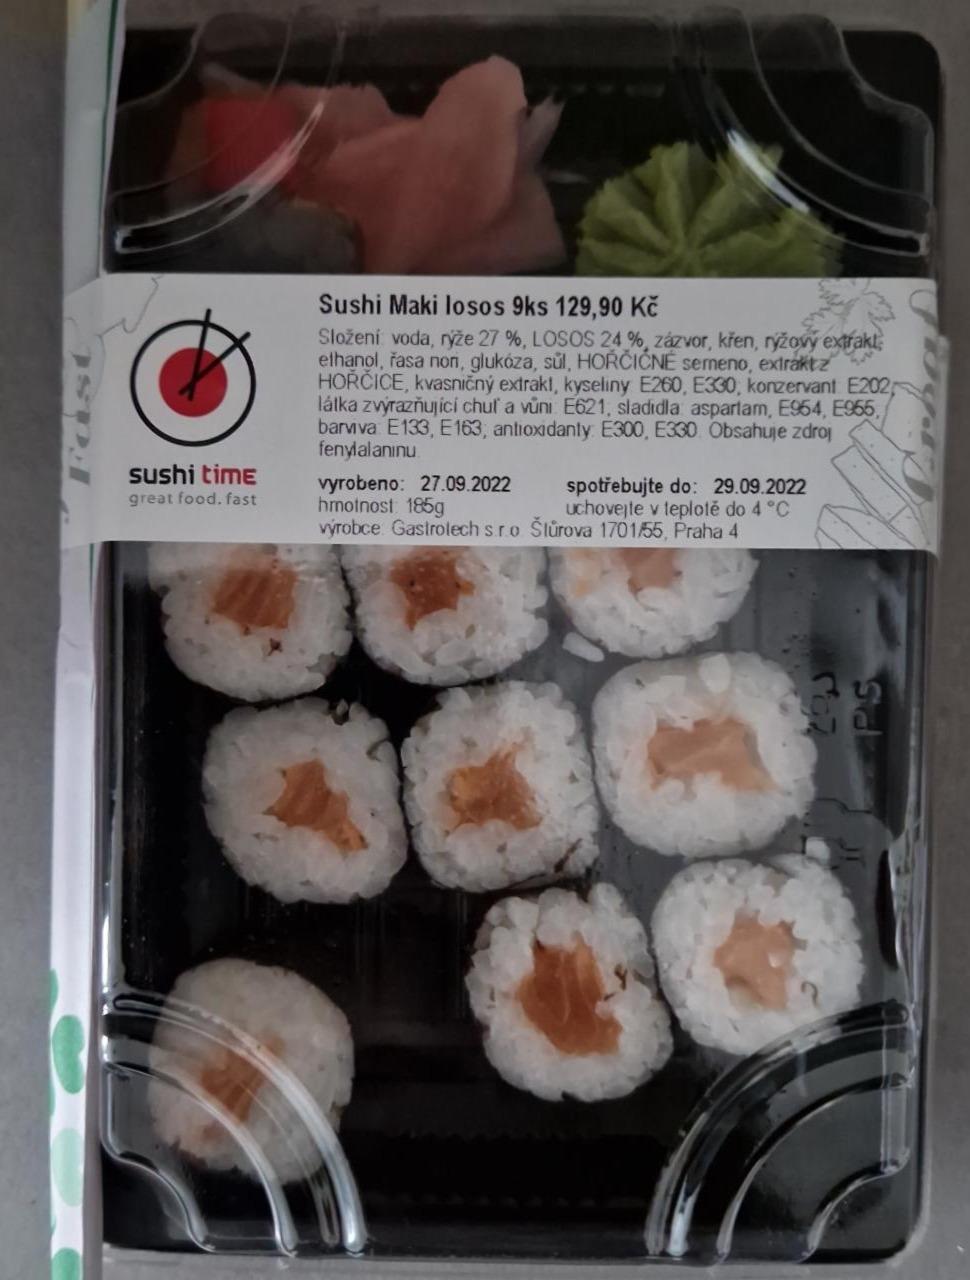 Fotografie - Sushi Maki losos 9ks Sushi time